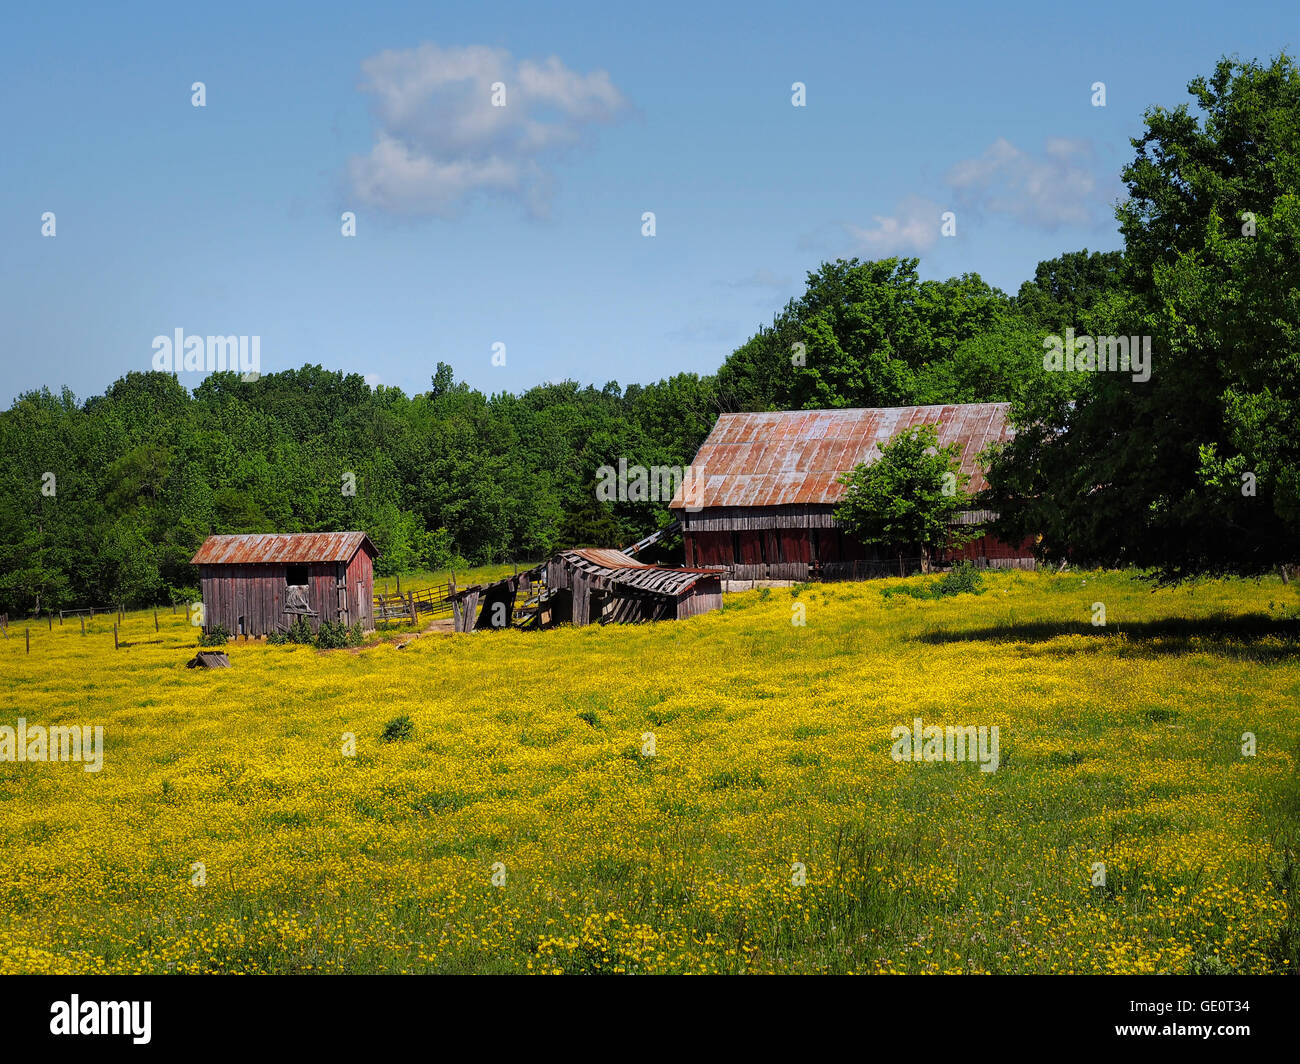 Los edificios de la granja agrícola, en Ohio, Estados Unidos. Los graneros rojos en campos amarillos bajo el cielo azul Foto de stock